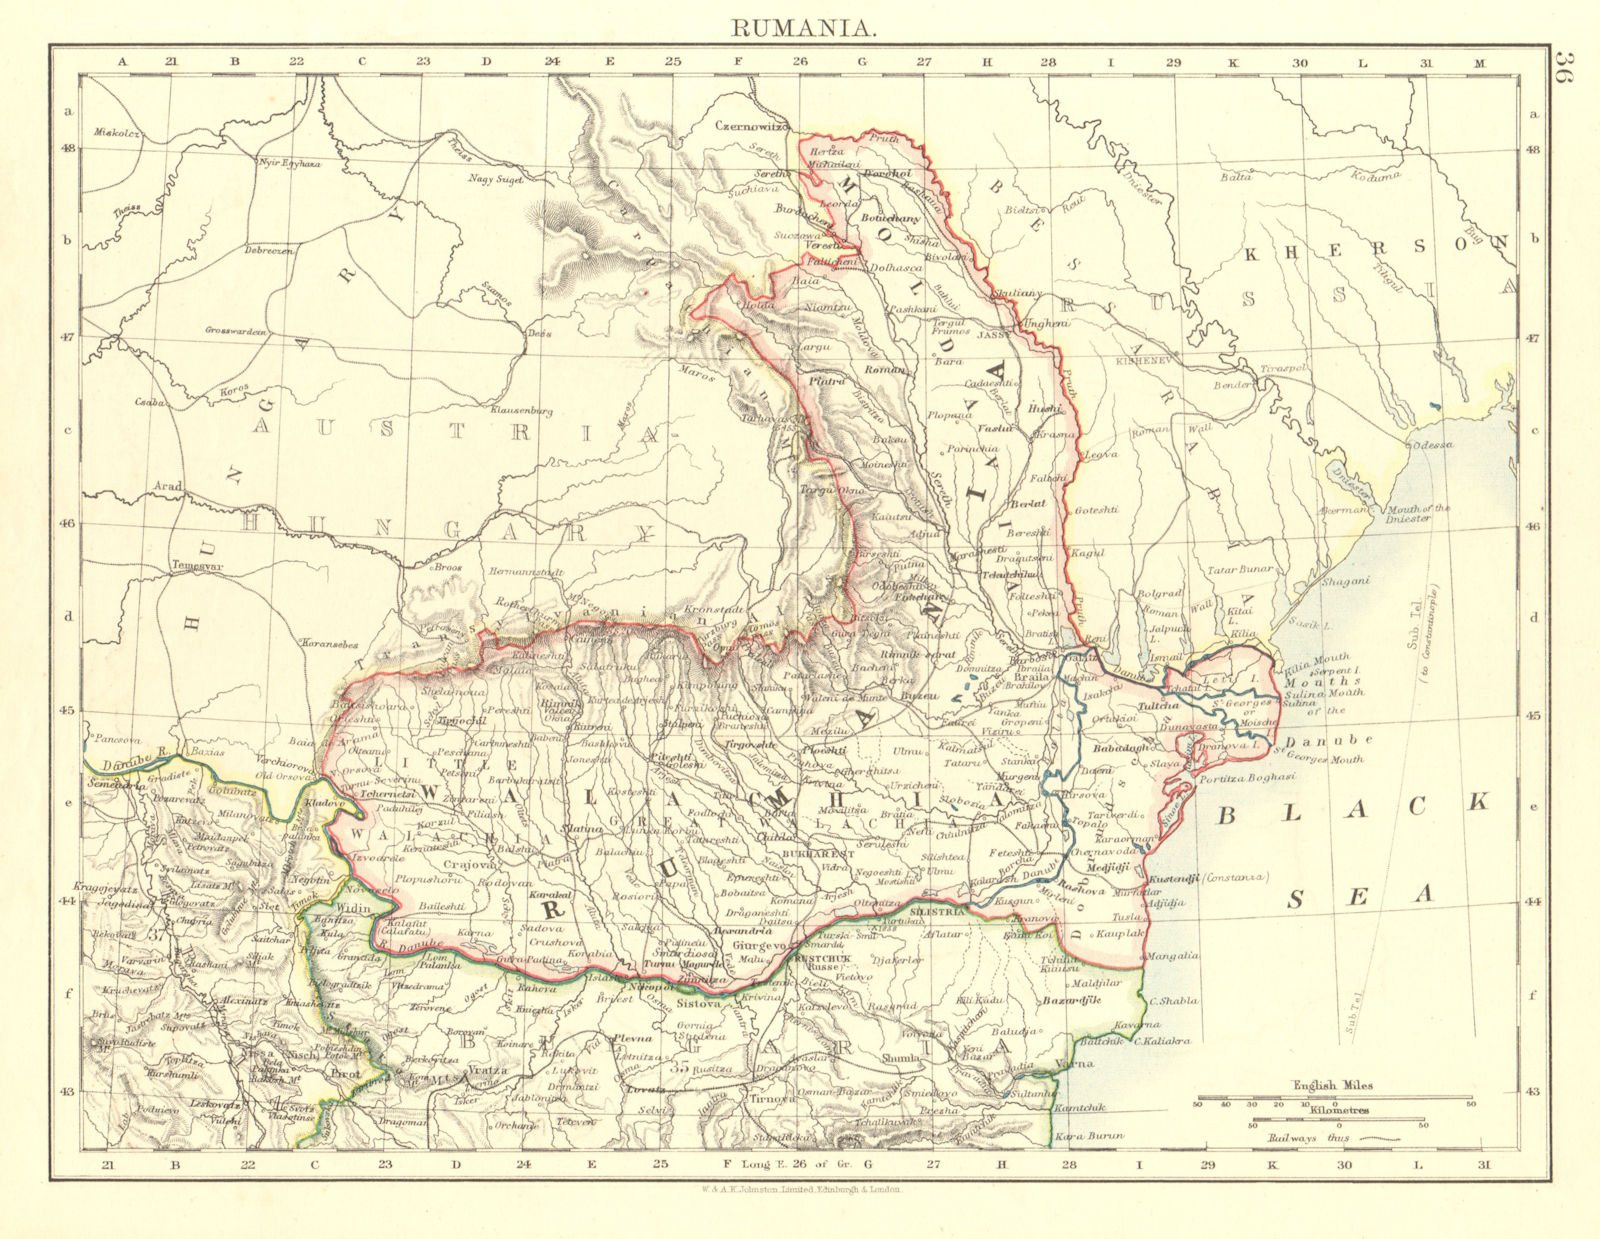 RUMANIA. Romania Wallachia Moldavia Moldova. Railways.  JOHNSTON 1906 map